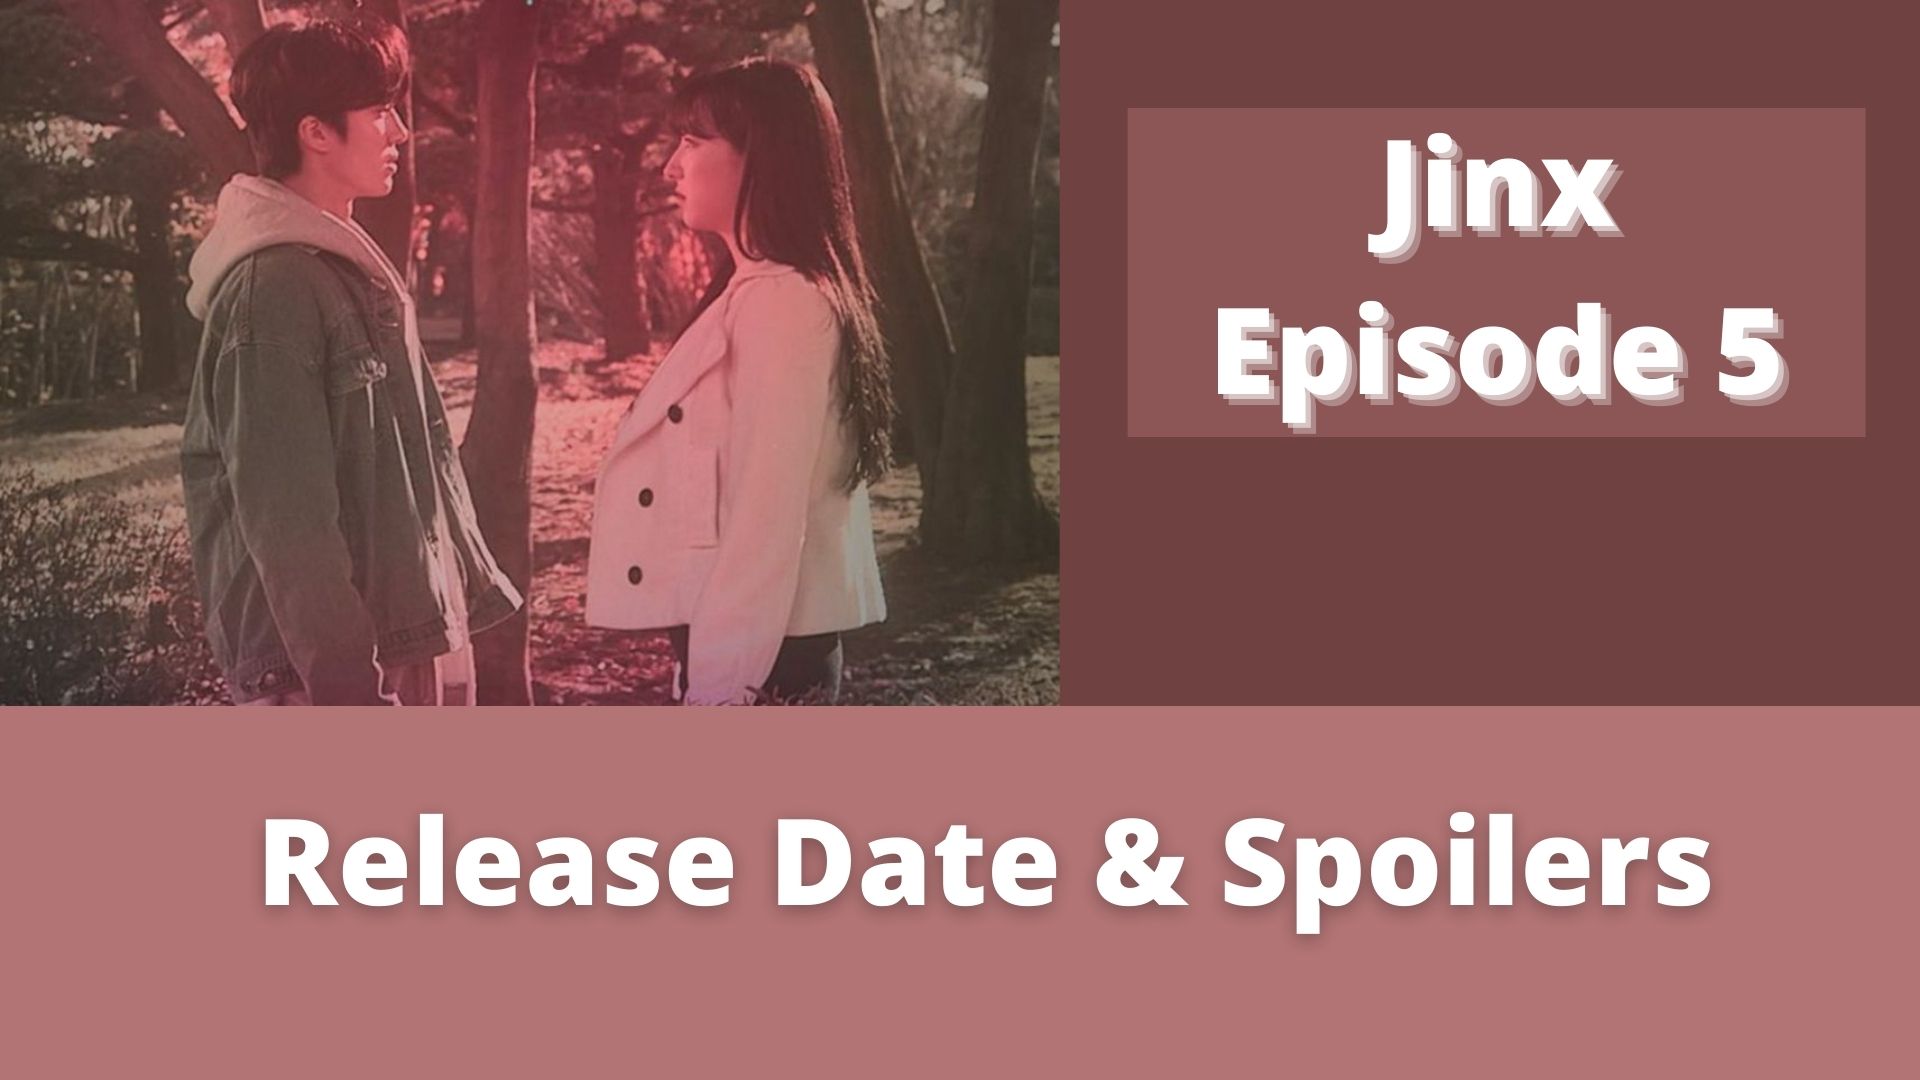 Jinx Episode 5: Release Date & Spoilers